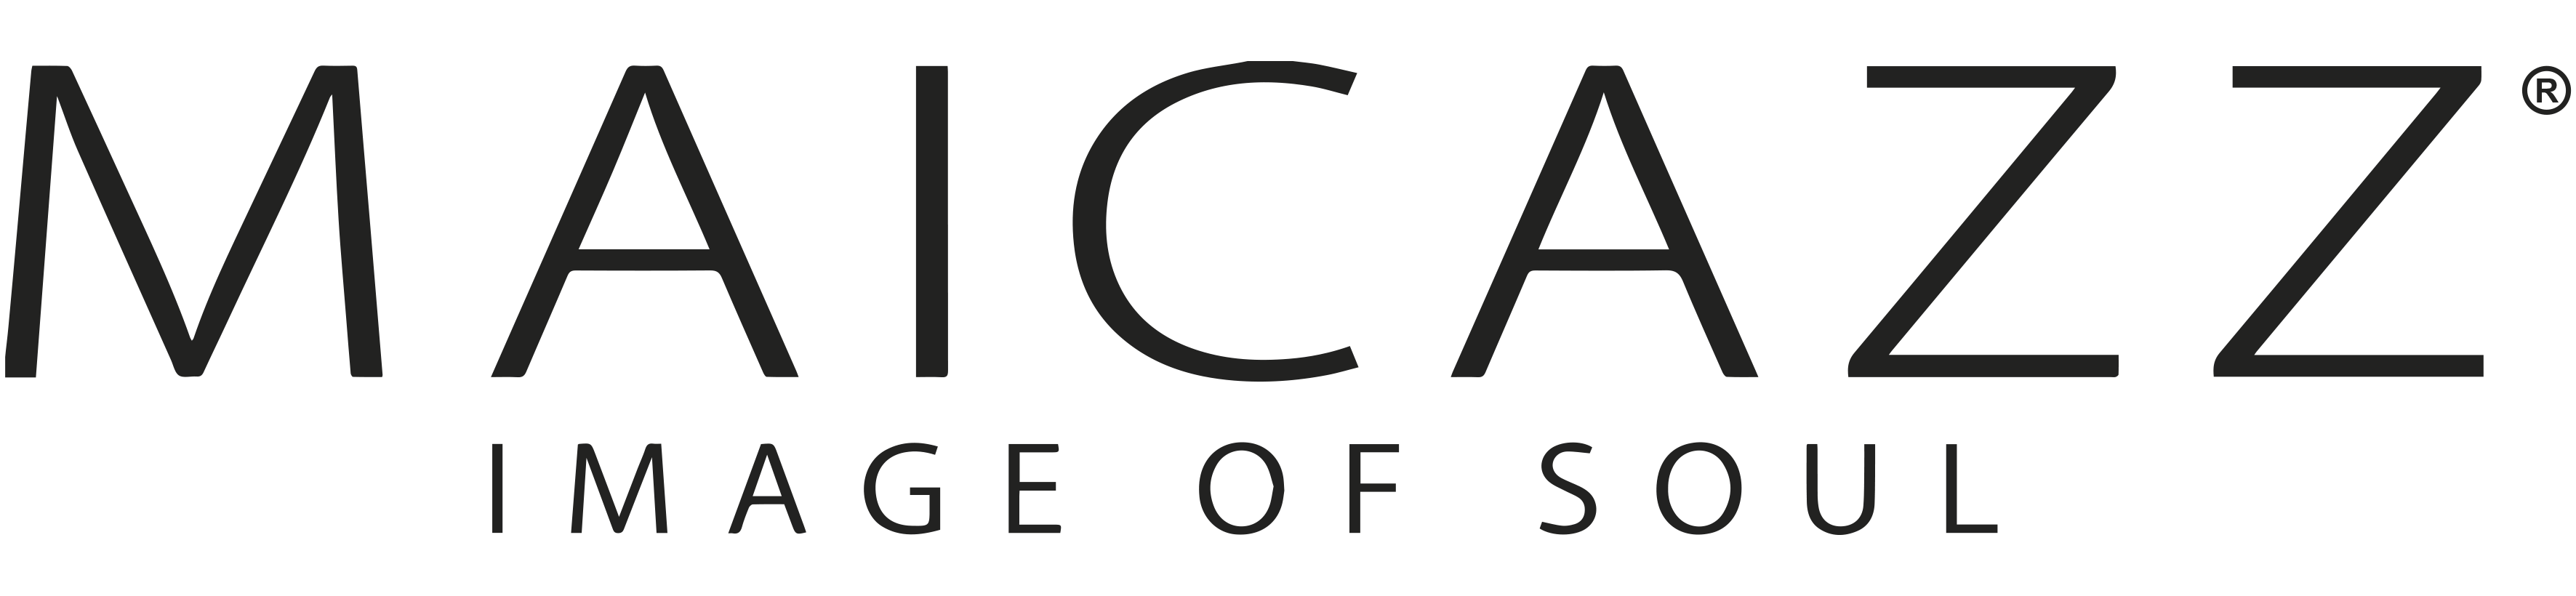 maicazz logo